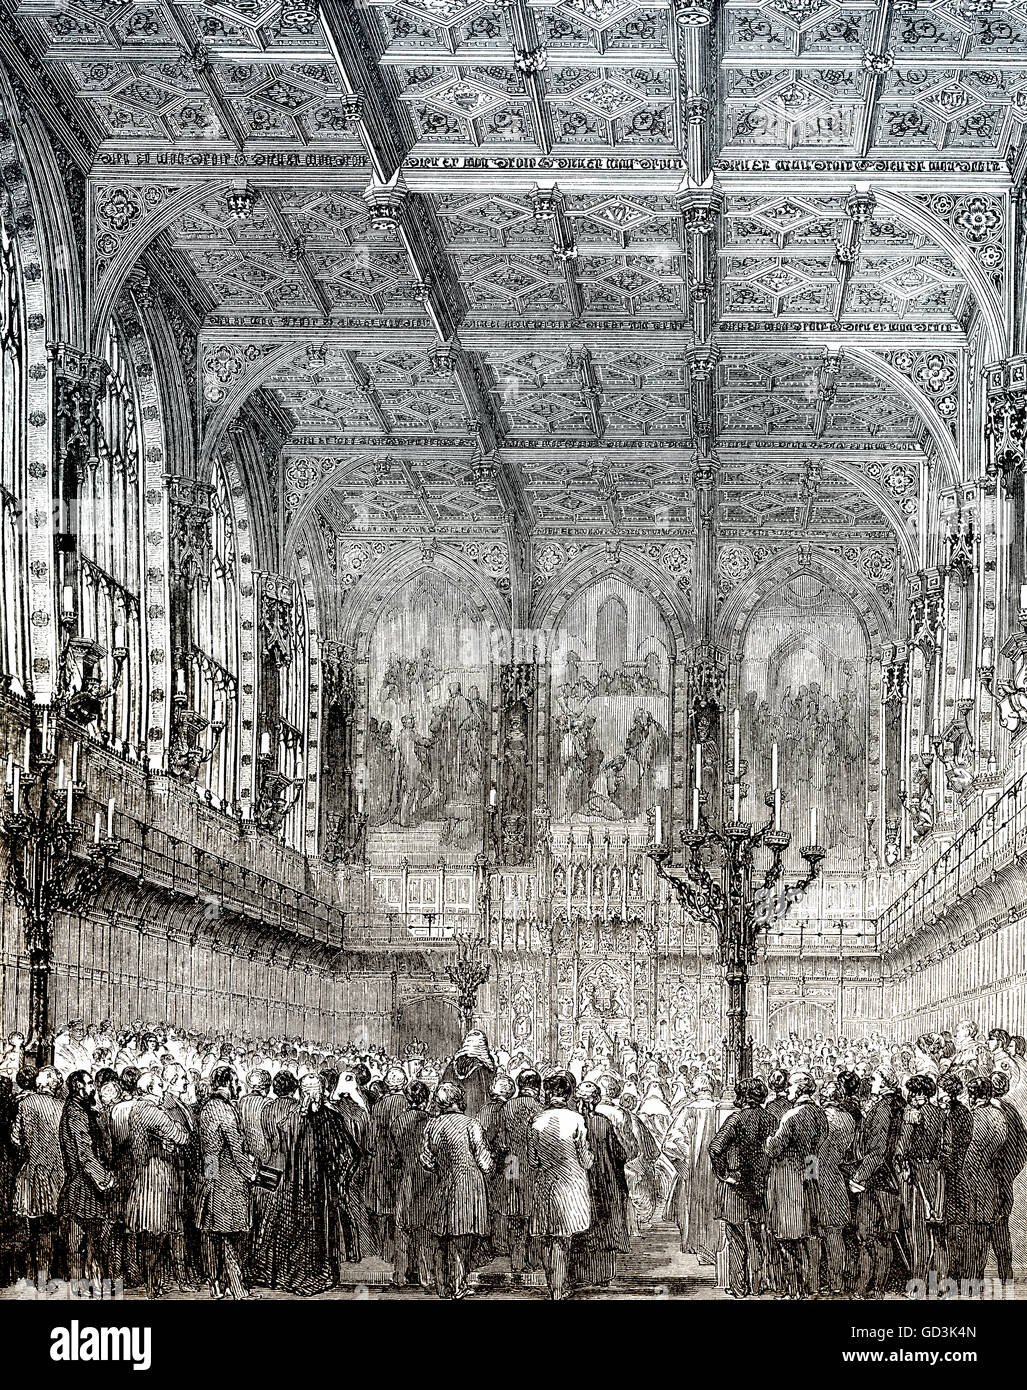 La Chambre des Lords, chambre haute, Londres, Angleterre, 19e siècle Banque D'Images